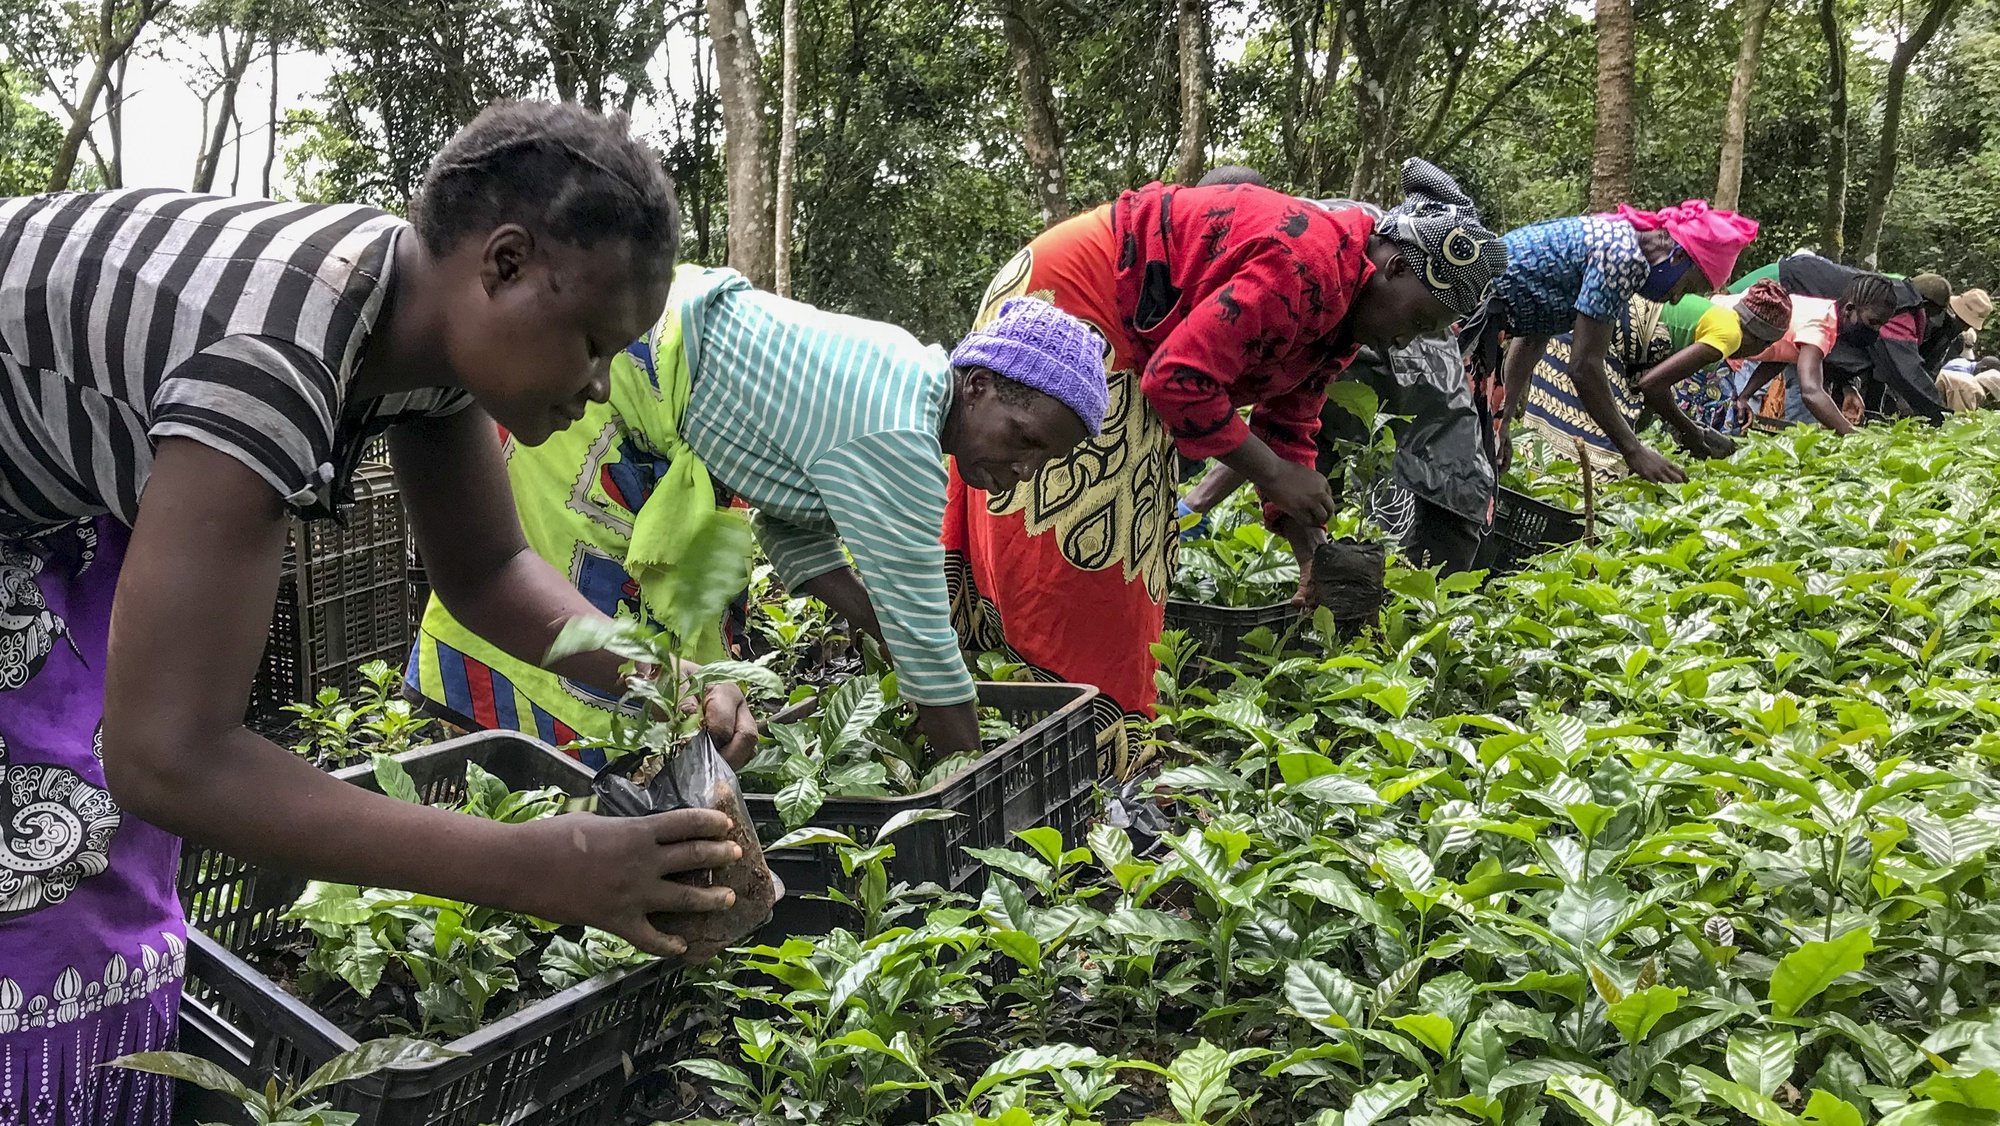 Colaboradores trabalham com mudas de café arábica no âmbito do projeto da Agrotur que arrancou em 2020, num campo experimental da zona tampão do Parque Nacional de Chimanimani, no Chimoio, Moçambique, 15 de fevereiro de 2022. Um total de 1.600 camponeses estão envolvidos no plantio de 400 hectares de café orgânico em Chimanimani num projeto agroflorestal que é o maior cafezal de Moçambique. ANDRÉ CATUEIRA/LUSA